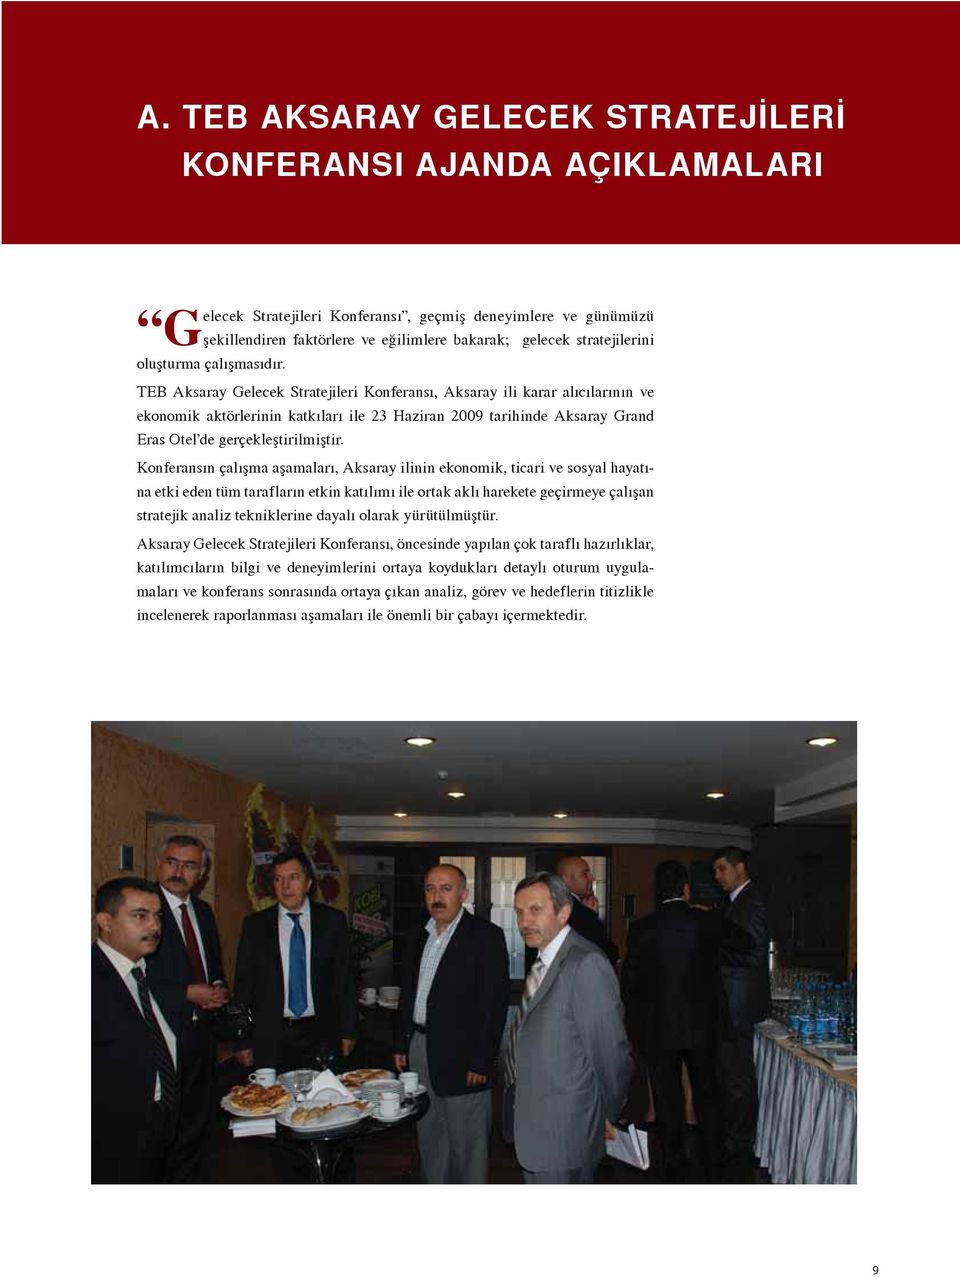 TEB Aksaray Gelecek Stratejileri Konferansı, Aksaray ili karar alıcılarının ve ekonomik aktörlerinin katkıları ile 23 Haziran 2009 tarihinde Aksaray Grand Eras Otel de gerçekleştirilmiştir.